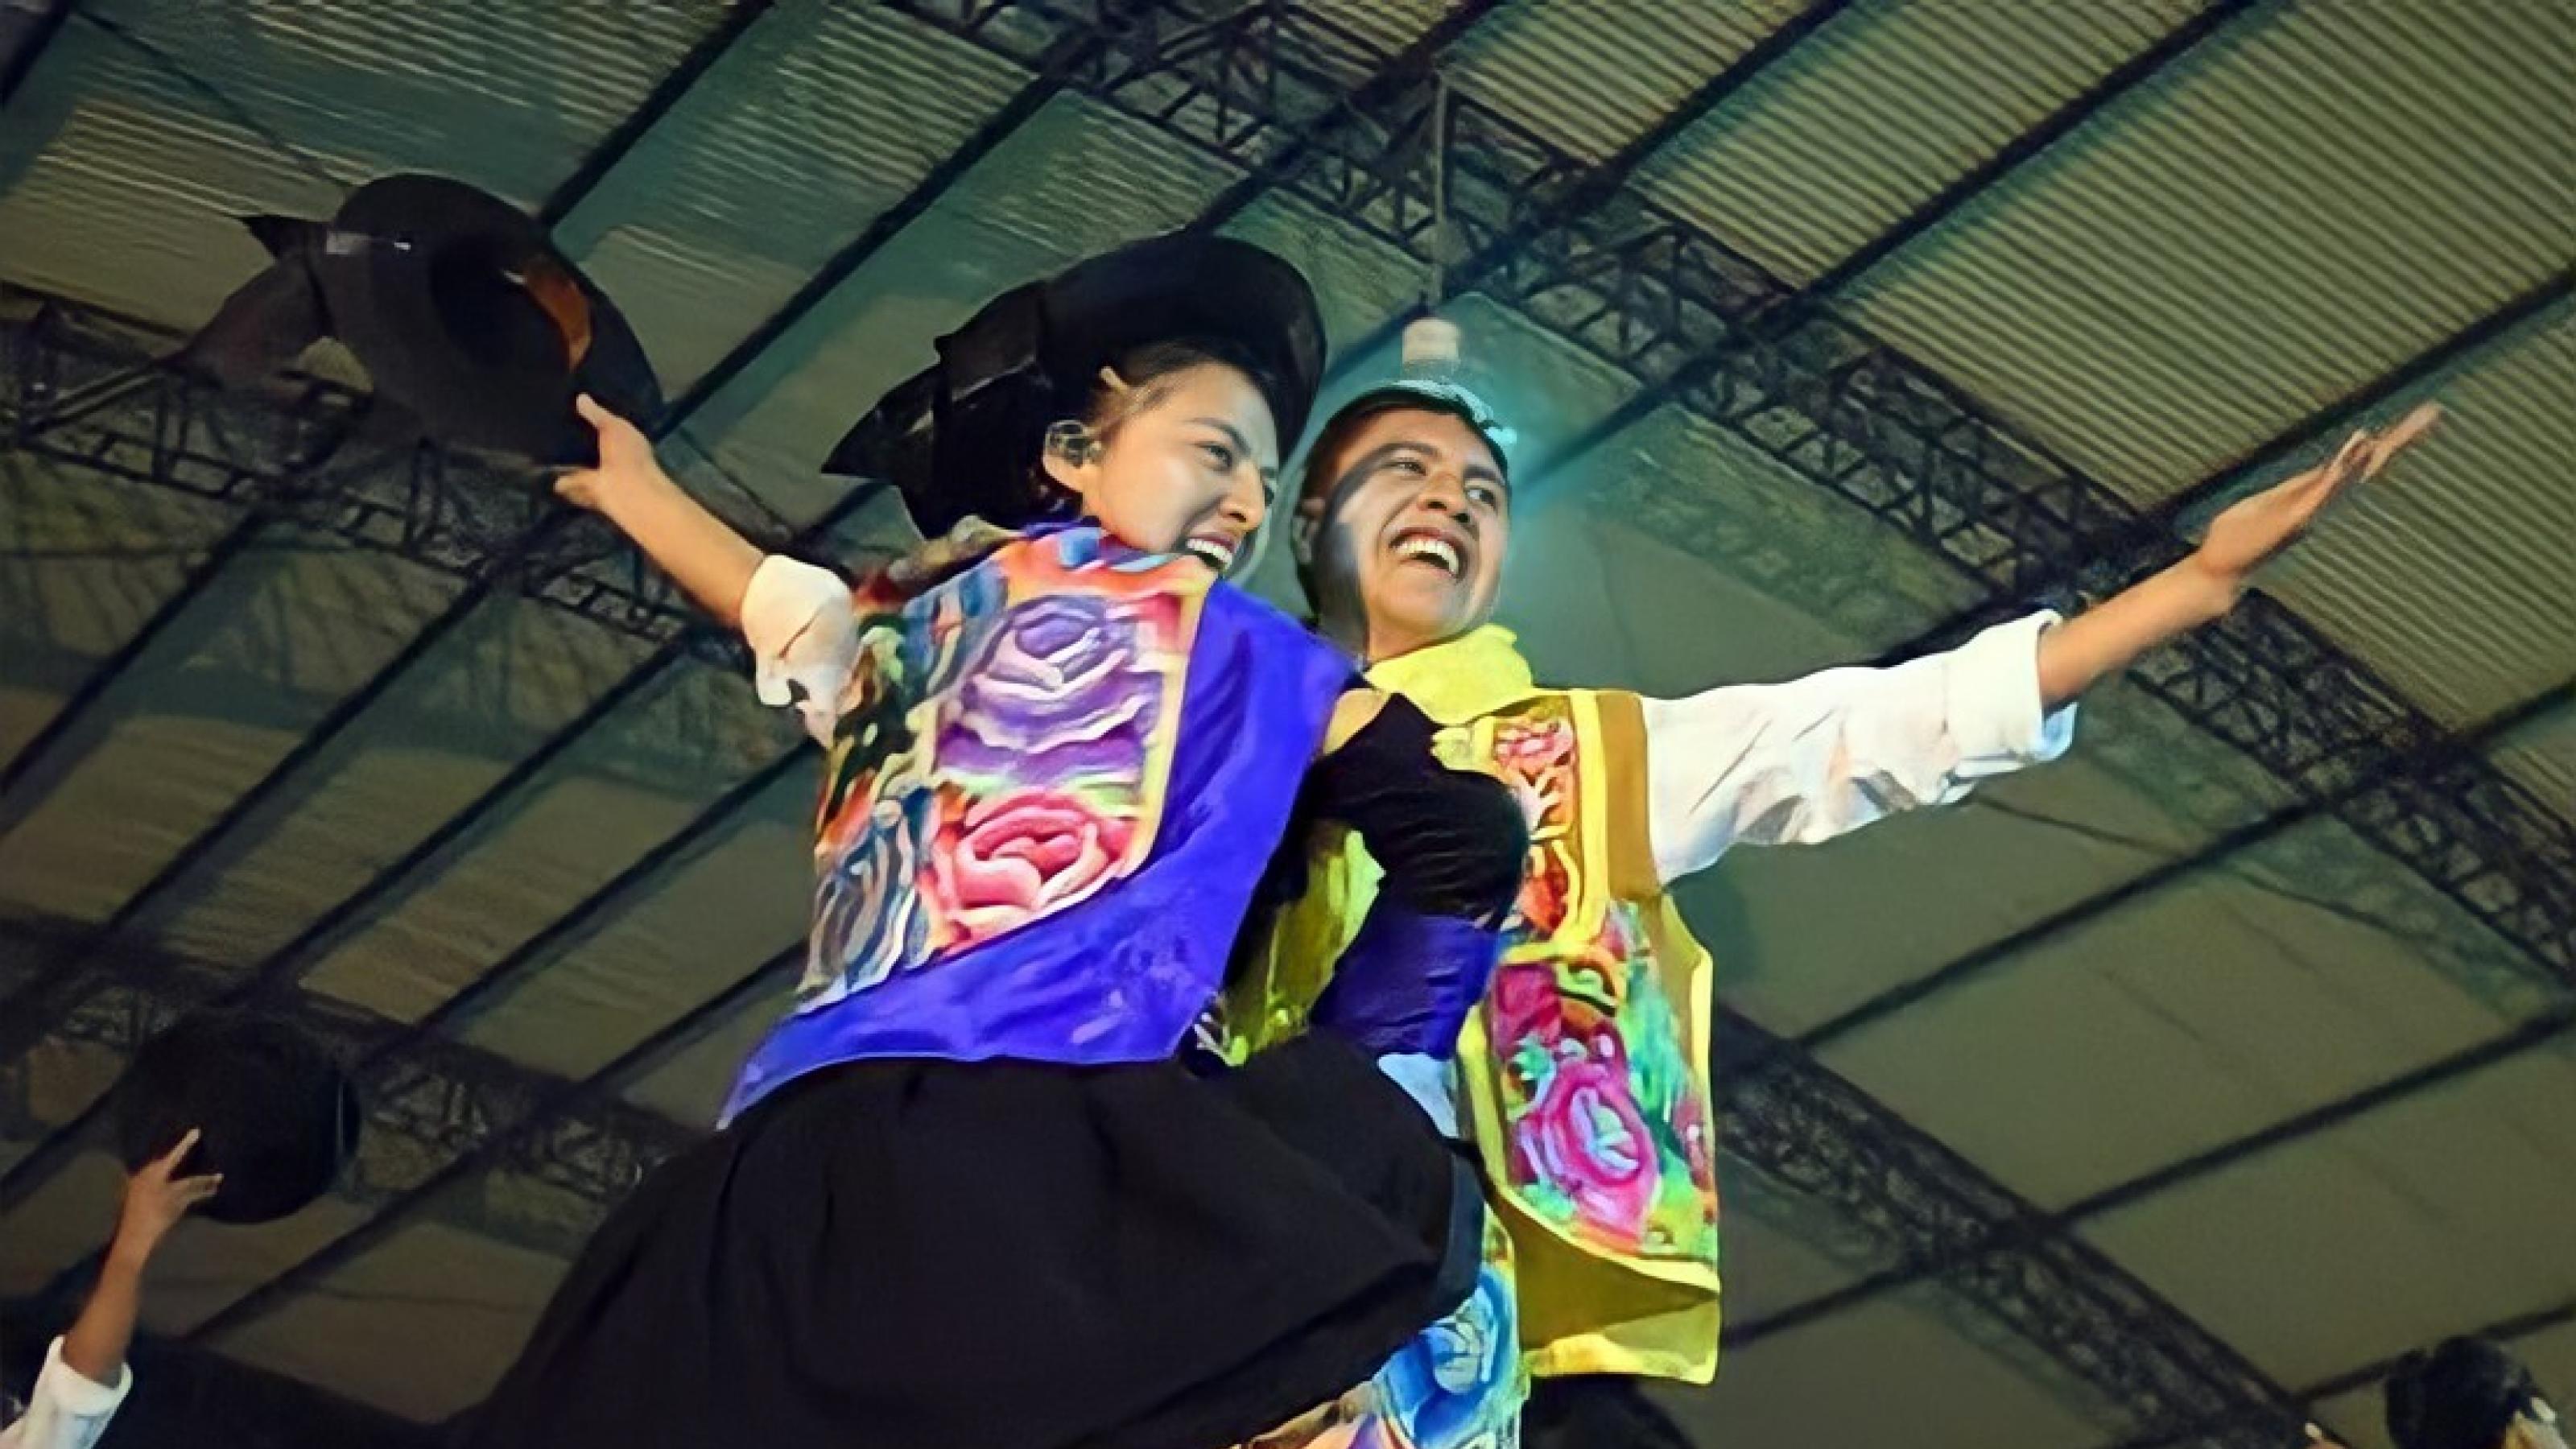 Ein junger Mann und eine junge Frau auf einer Bühne. Beide mit farbenfroh bestickten Rock bzw. Weste und schwarzem Hut. Der Mann hält den Hut in der Hand. Blicken lachend von der Bühne herunter.